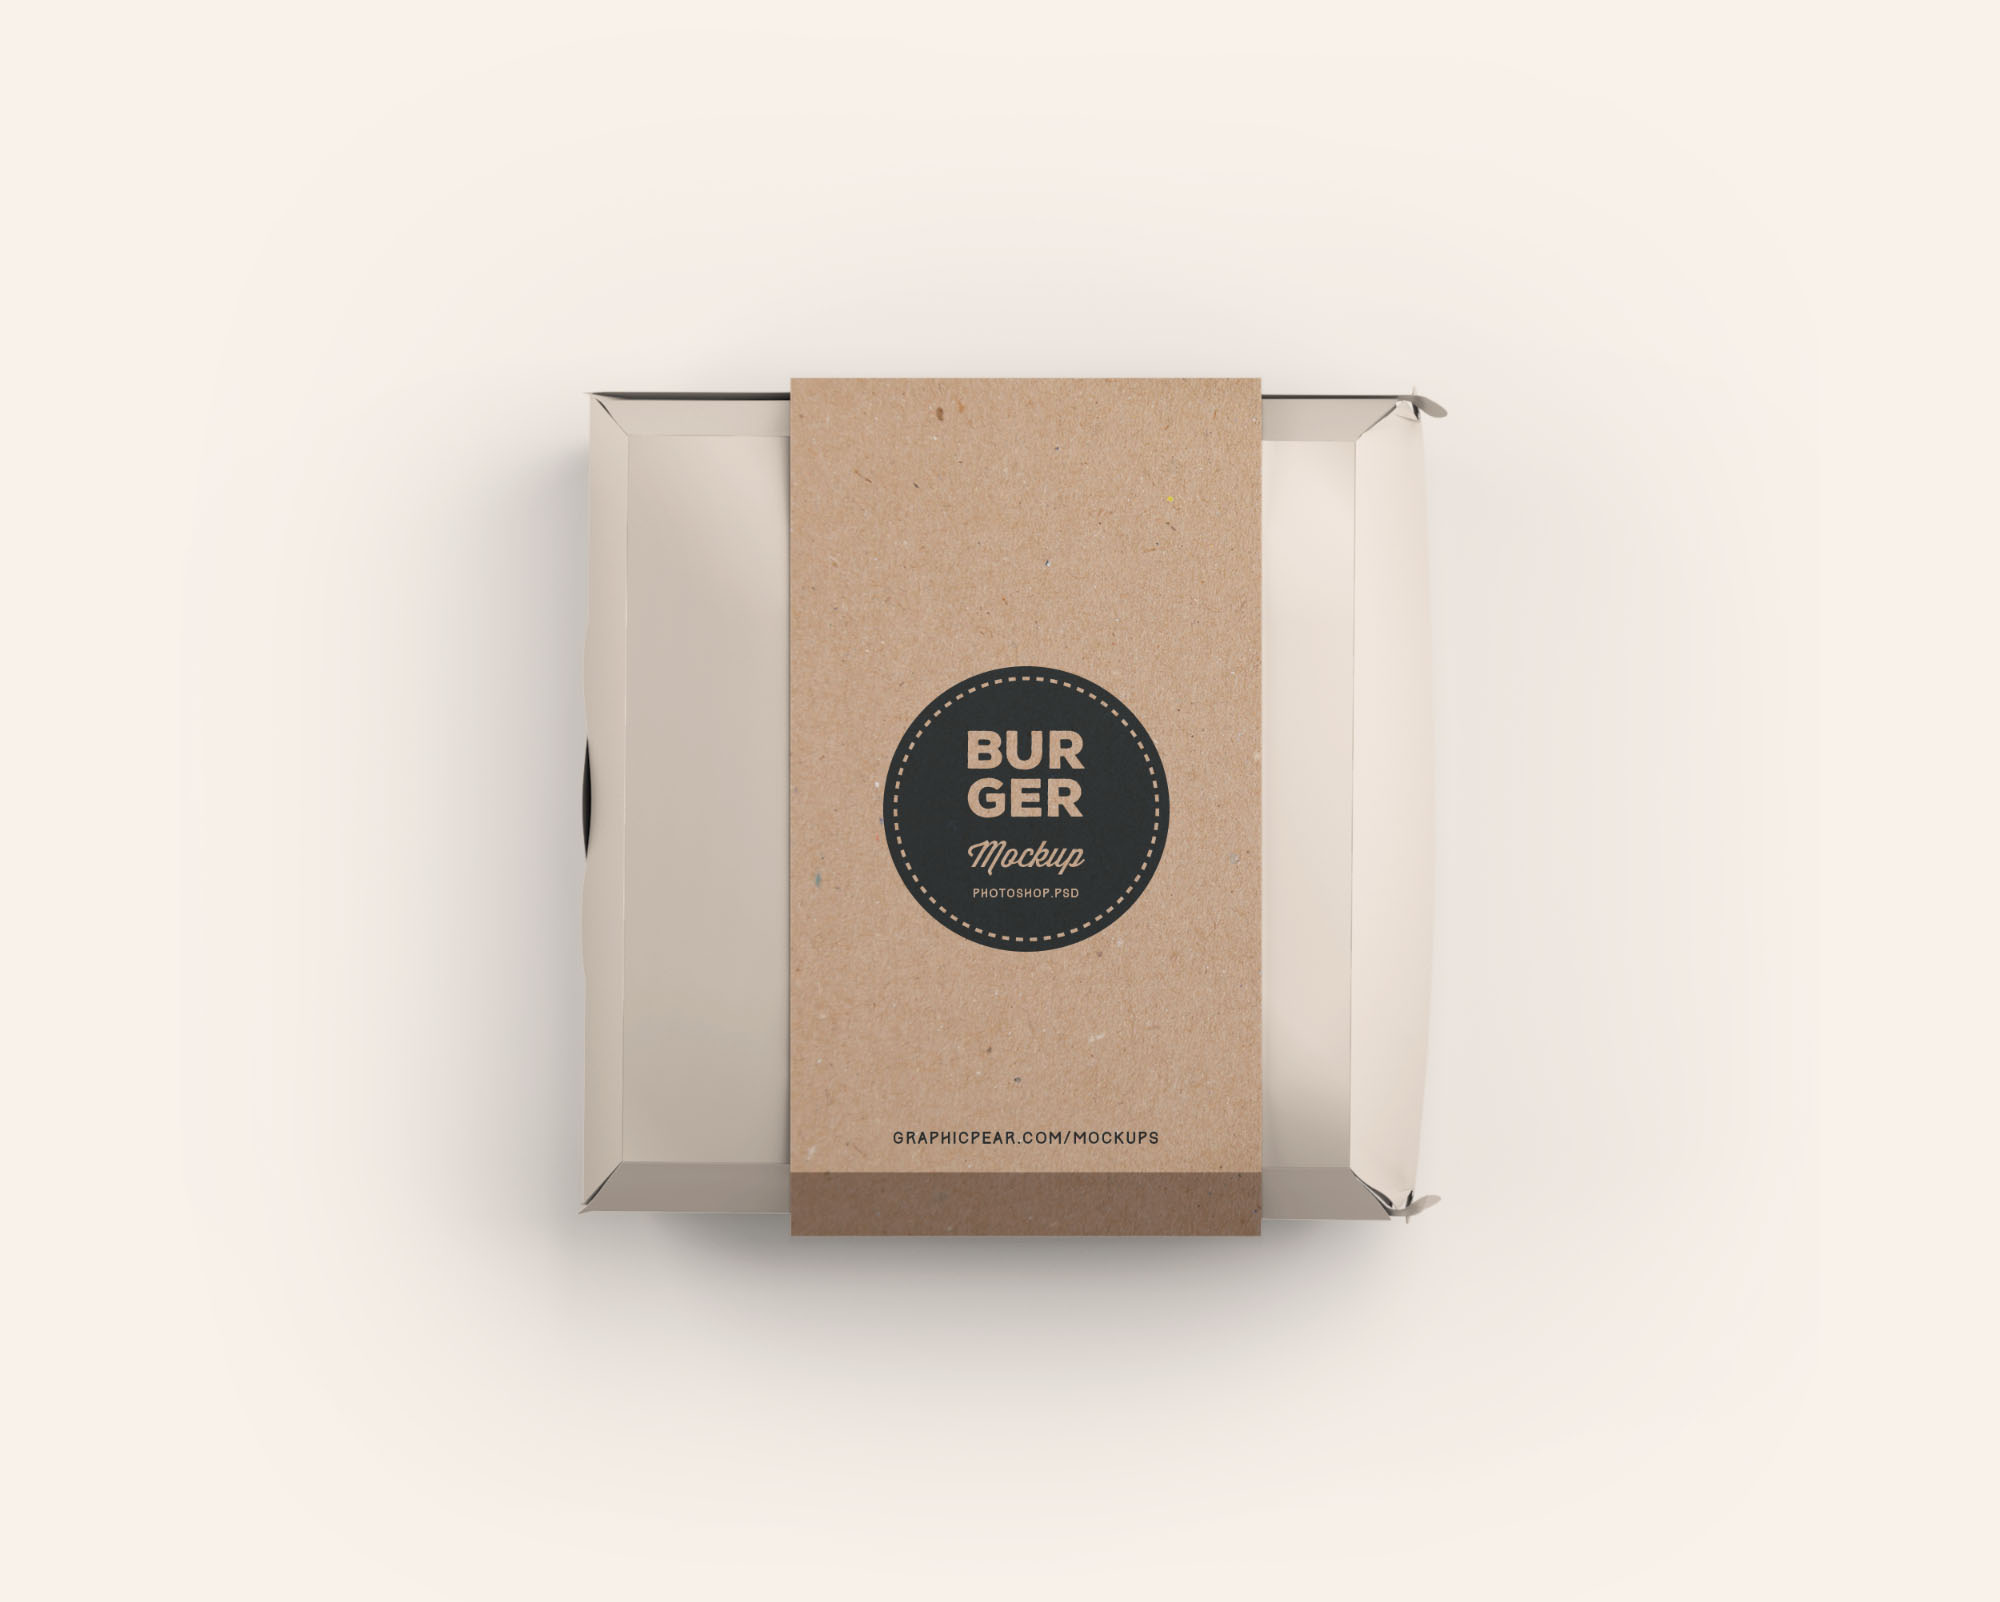 汉堡包装盒设计效果图样机模板 Burger Box Pack